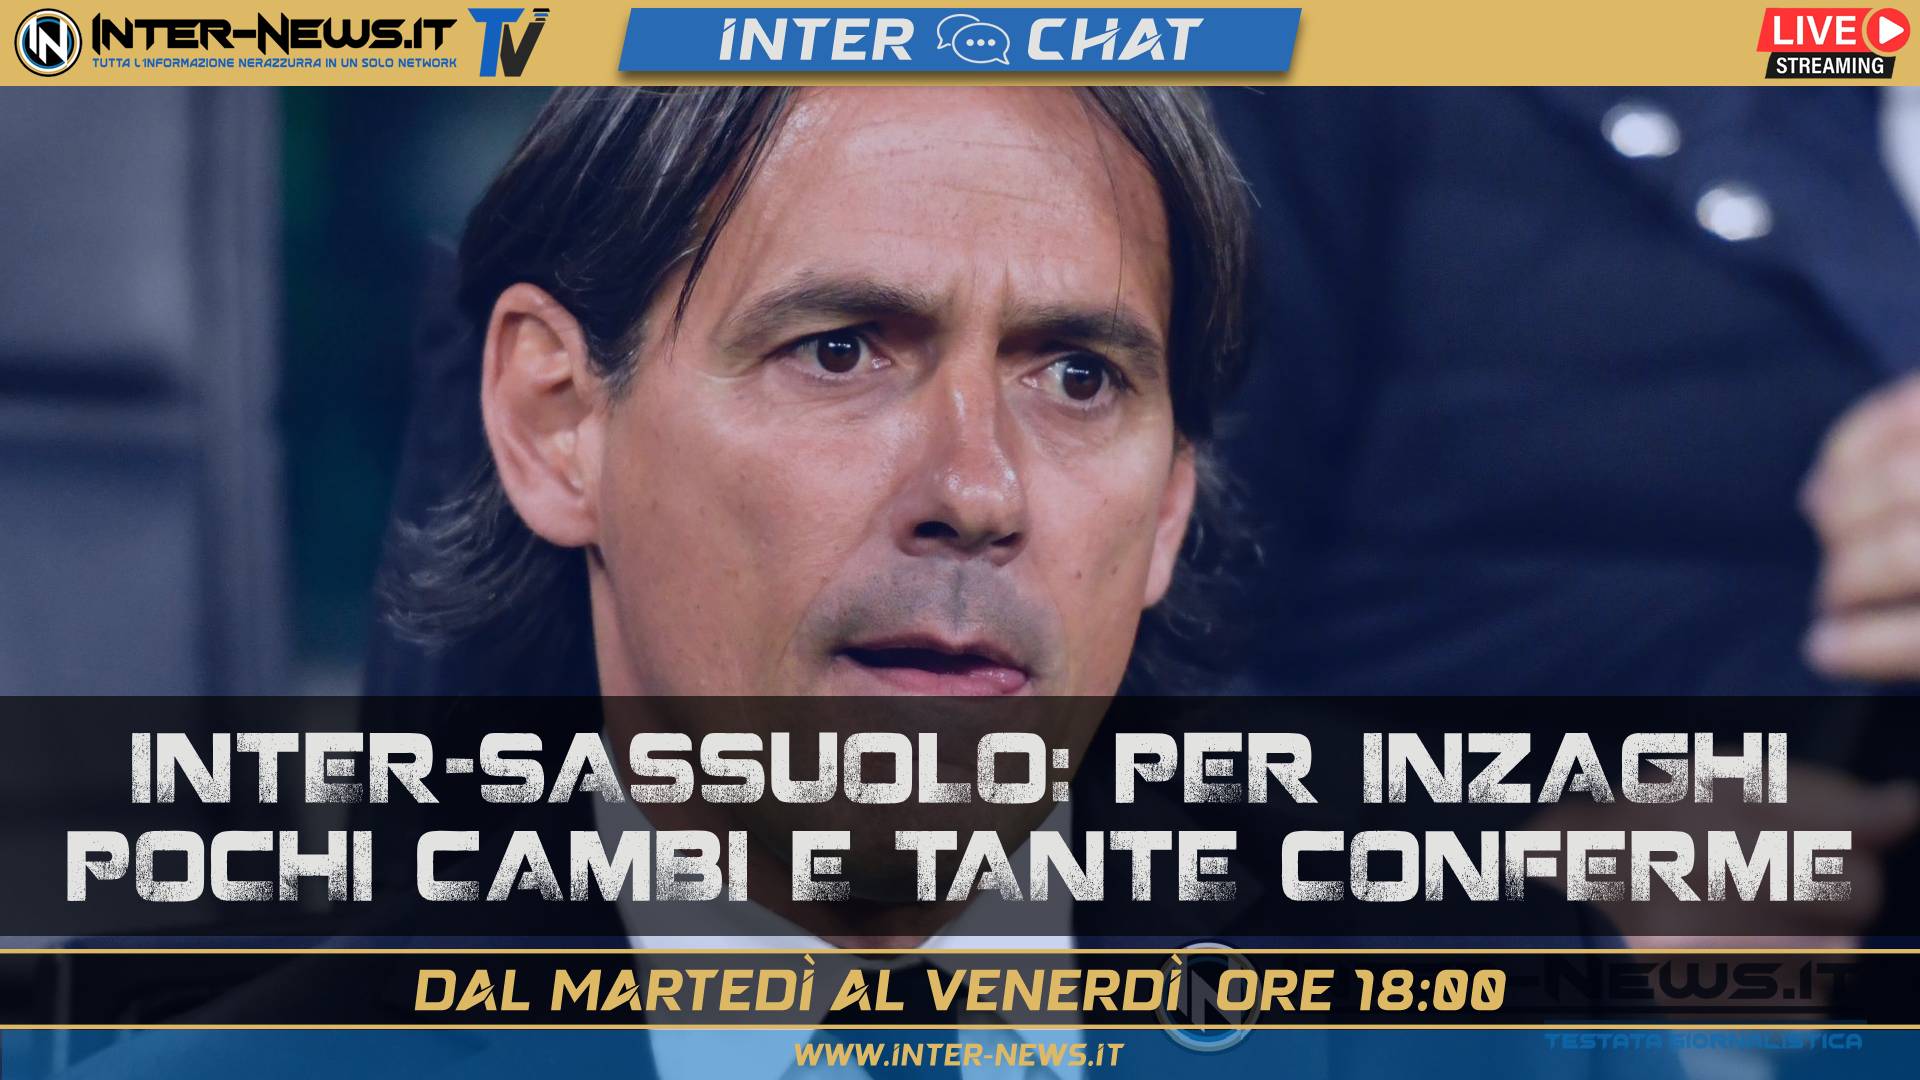 Inter Sassuolo, per Inzaghi pochi cambi e tante conferme! – Inter Chat LIVE